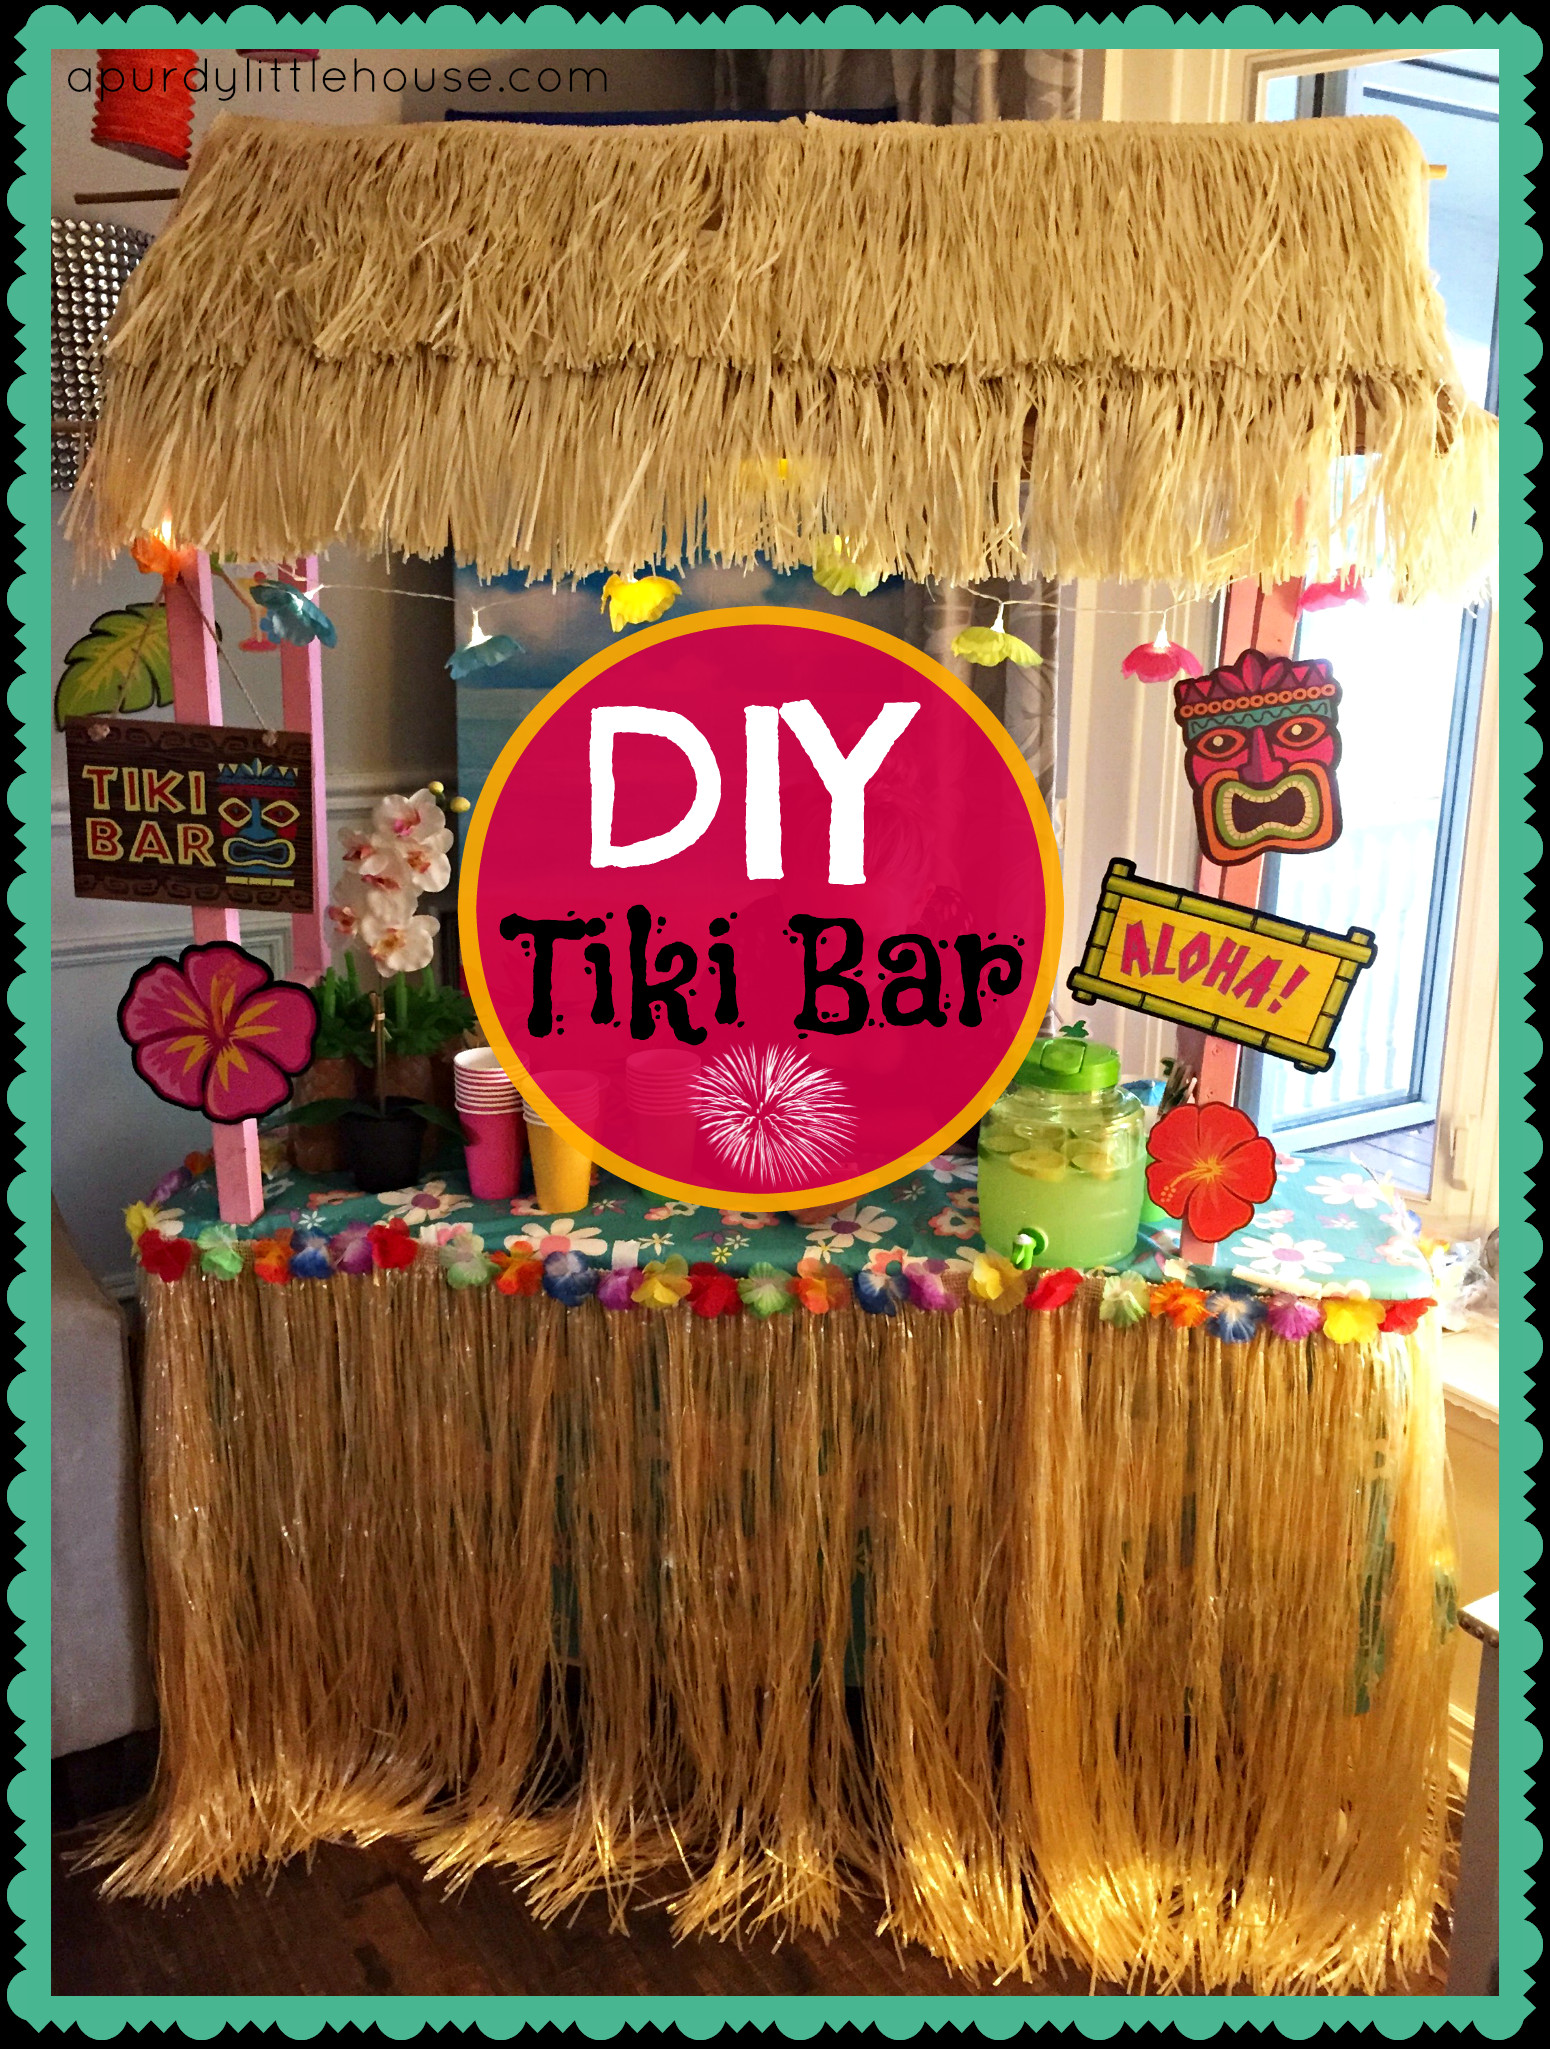 Best ideas about Tiki Bar DIY
. Save or Pin tiki bar Now.